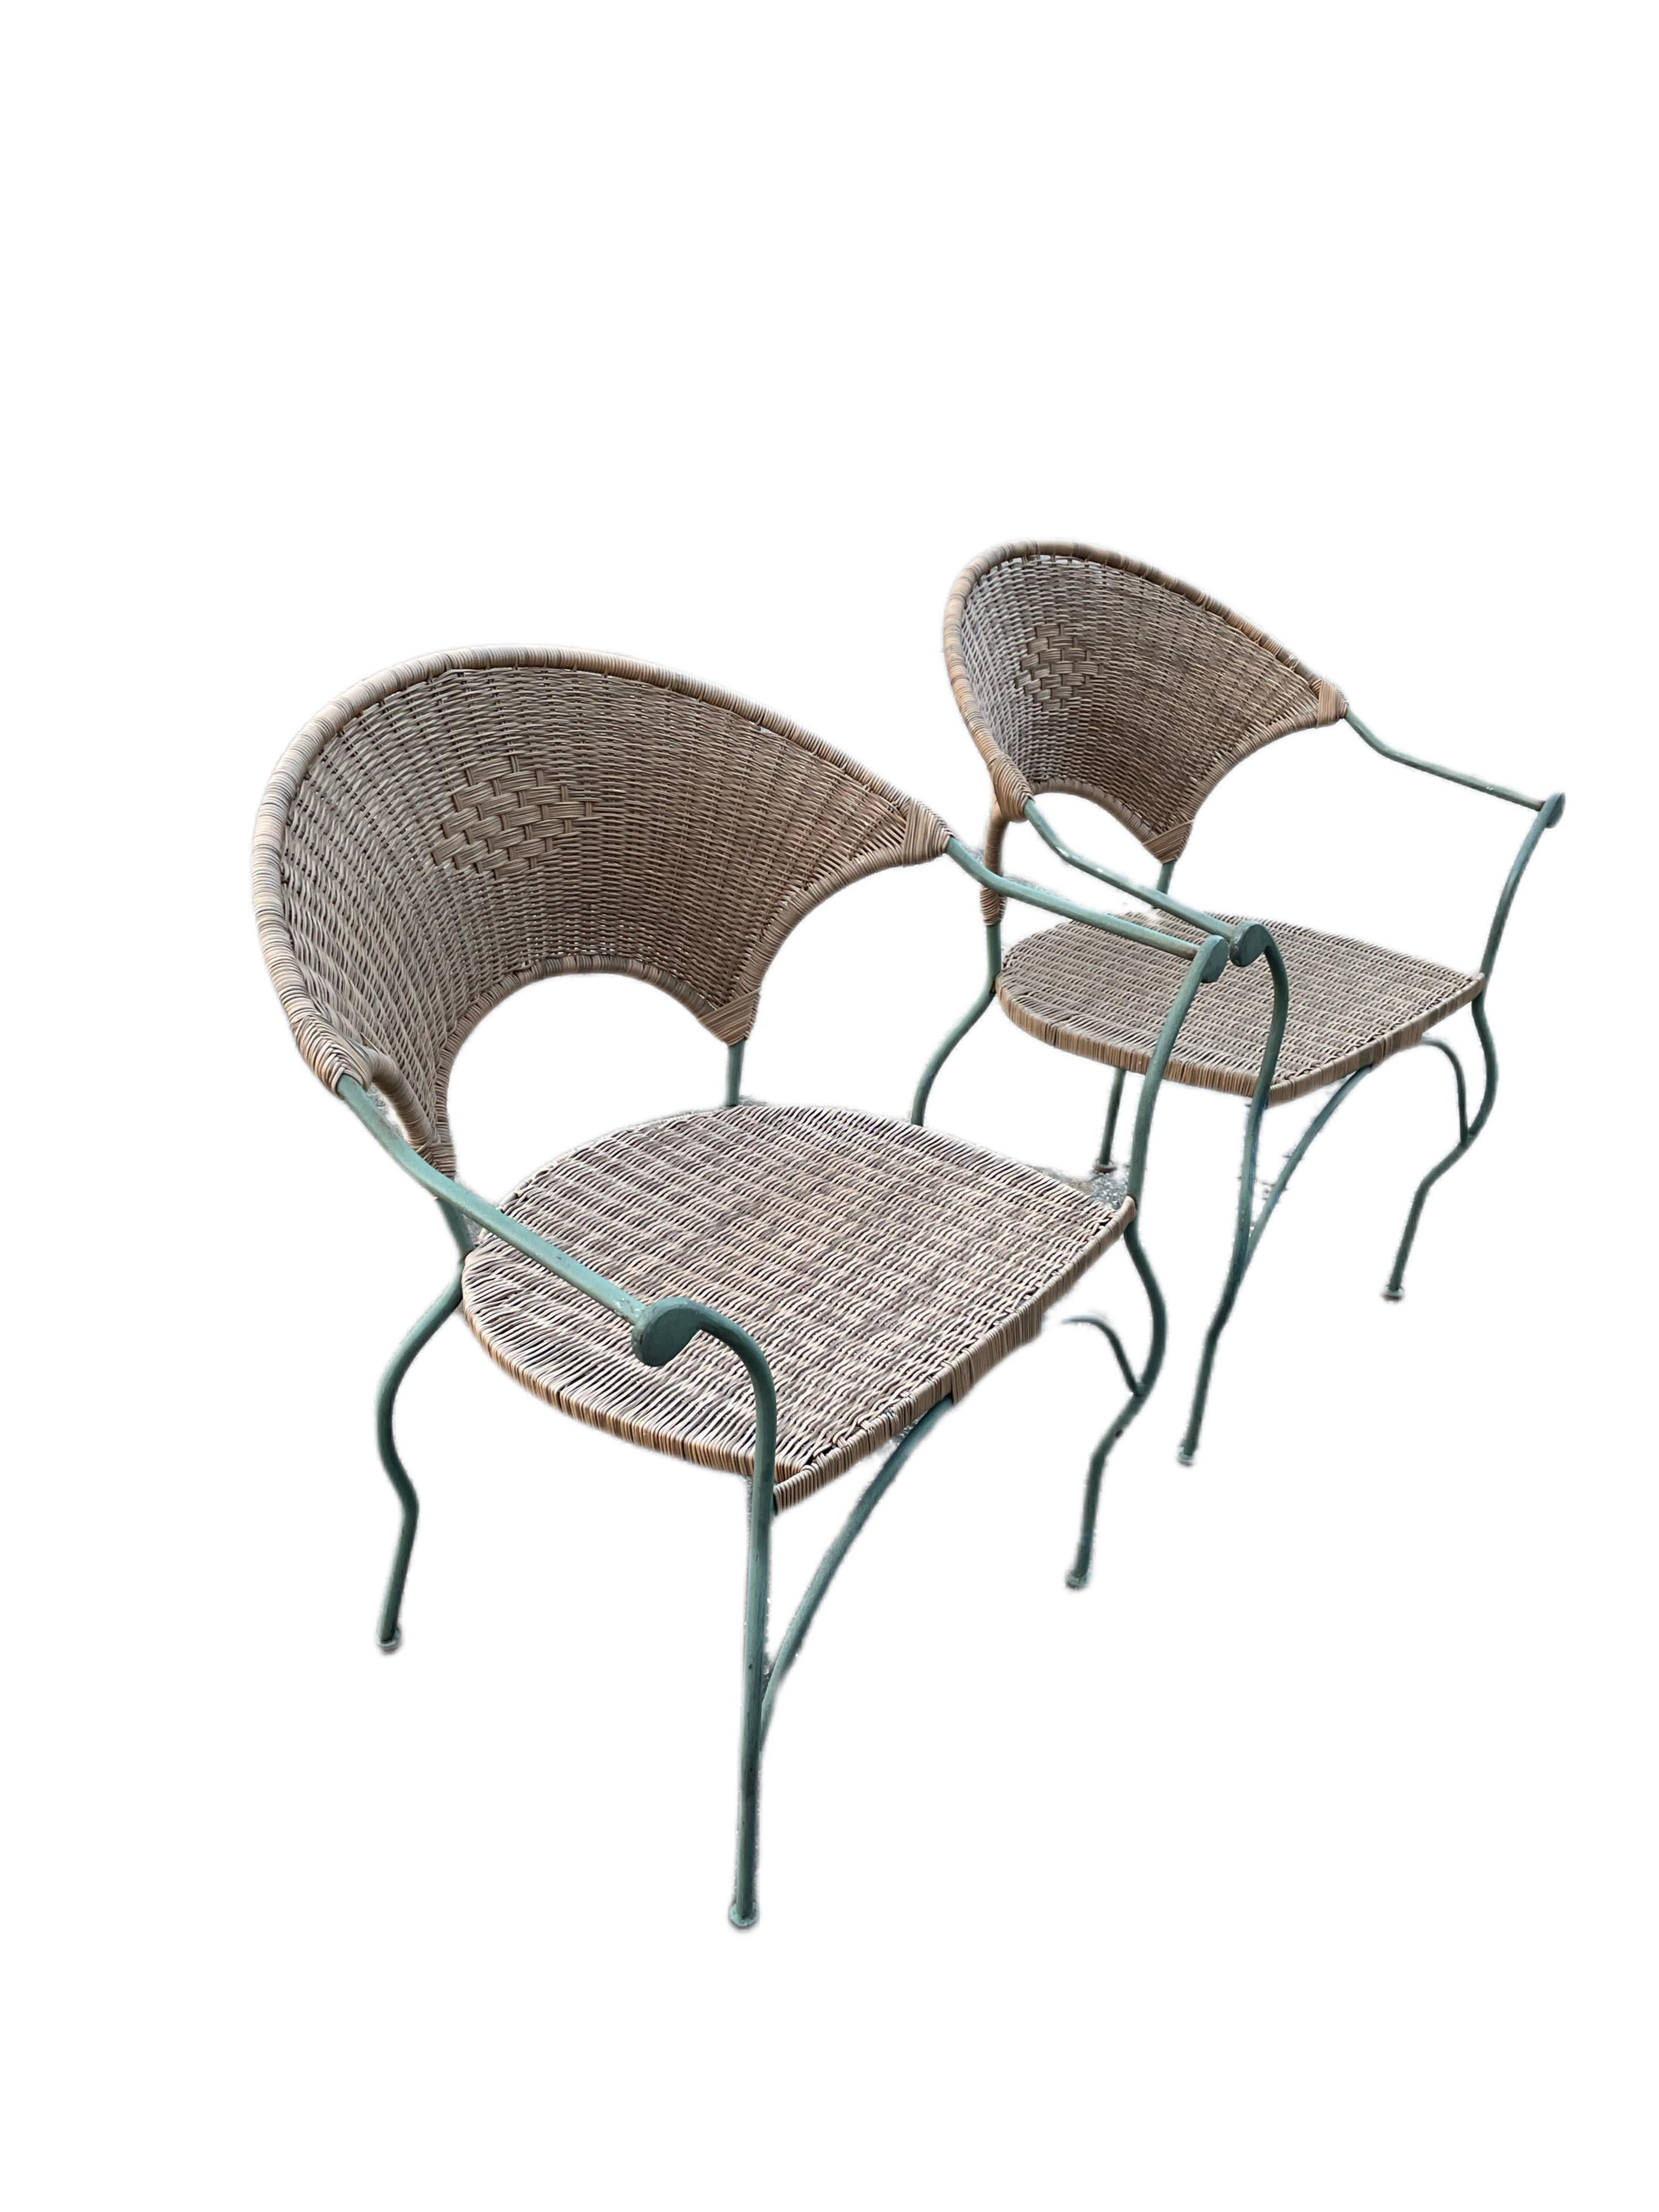 Disponible dès maintenant pour votre plaisir et prêt à être expédié est une paire de Chaise longue de patio en fer forgé vintage avec sièges et dossiers en osier.

Cet ensemble de 6 chaises en fer forgé est le complément idéal pour tout jardin,